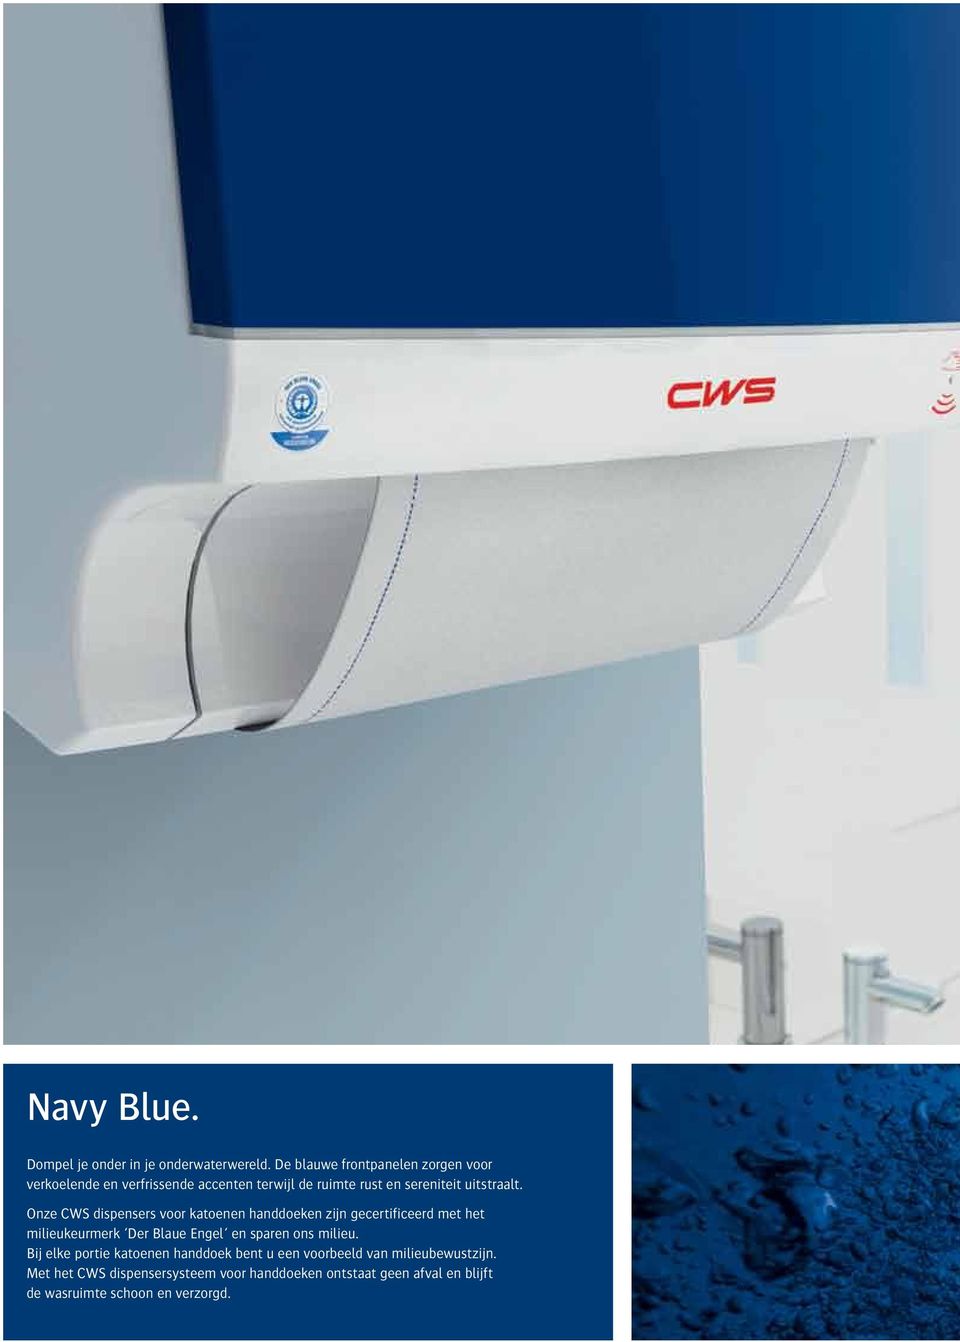 Onze CWS dispensers voor katoenen handdoeken zijn gecertificeerd met het milieukeurmerk Der Blaue Engel en sparen ons